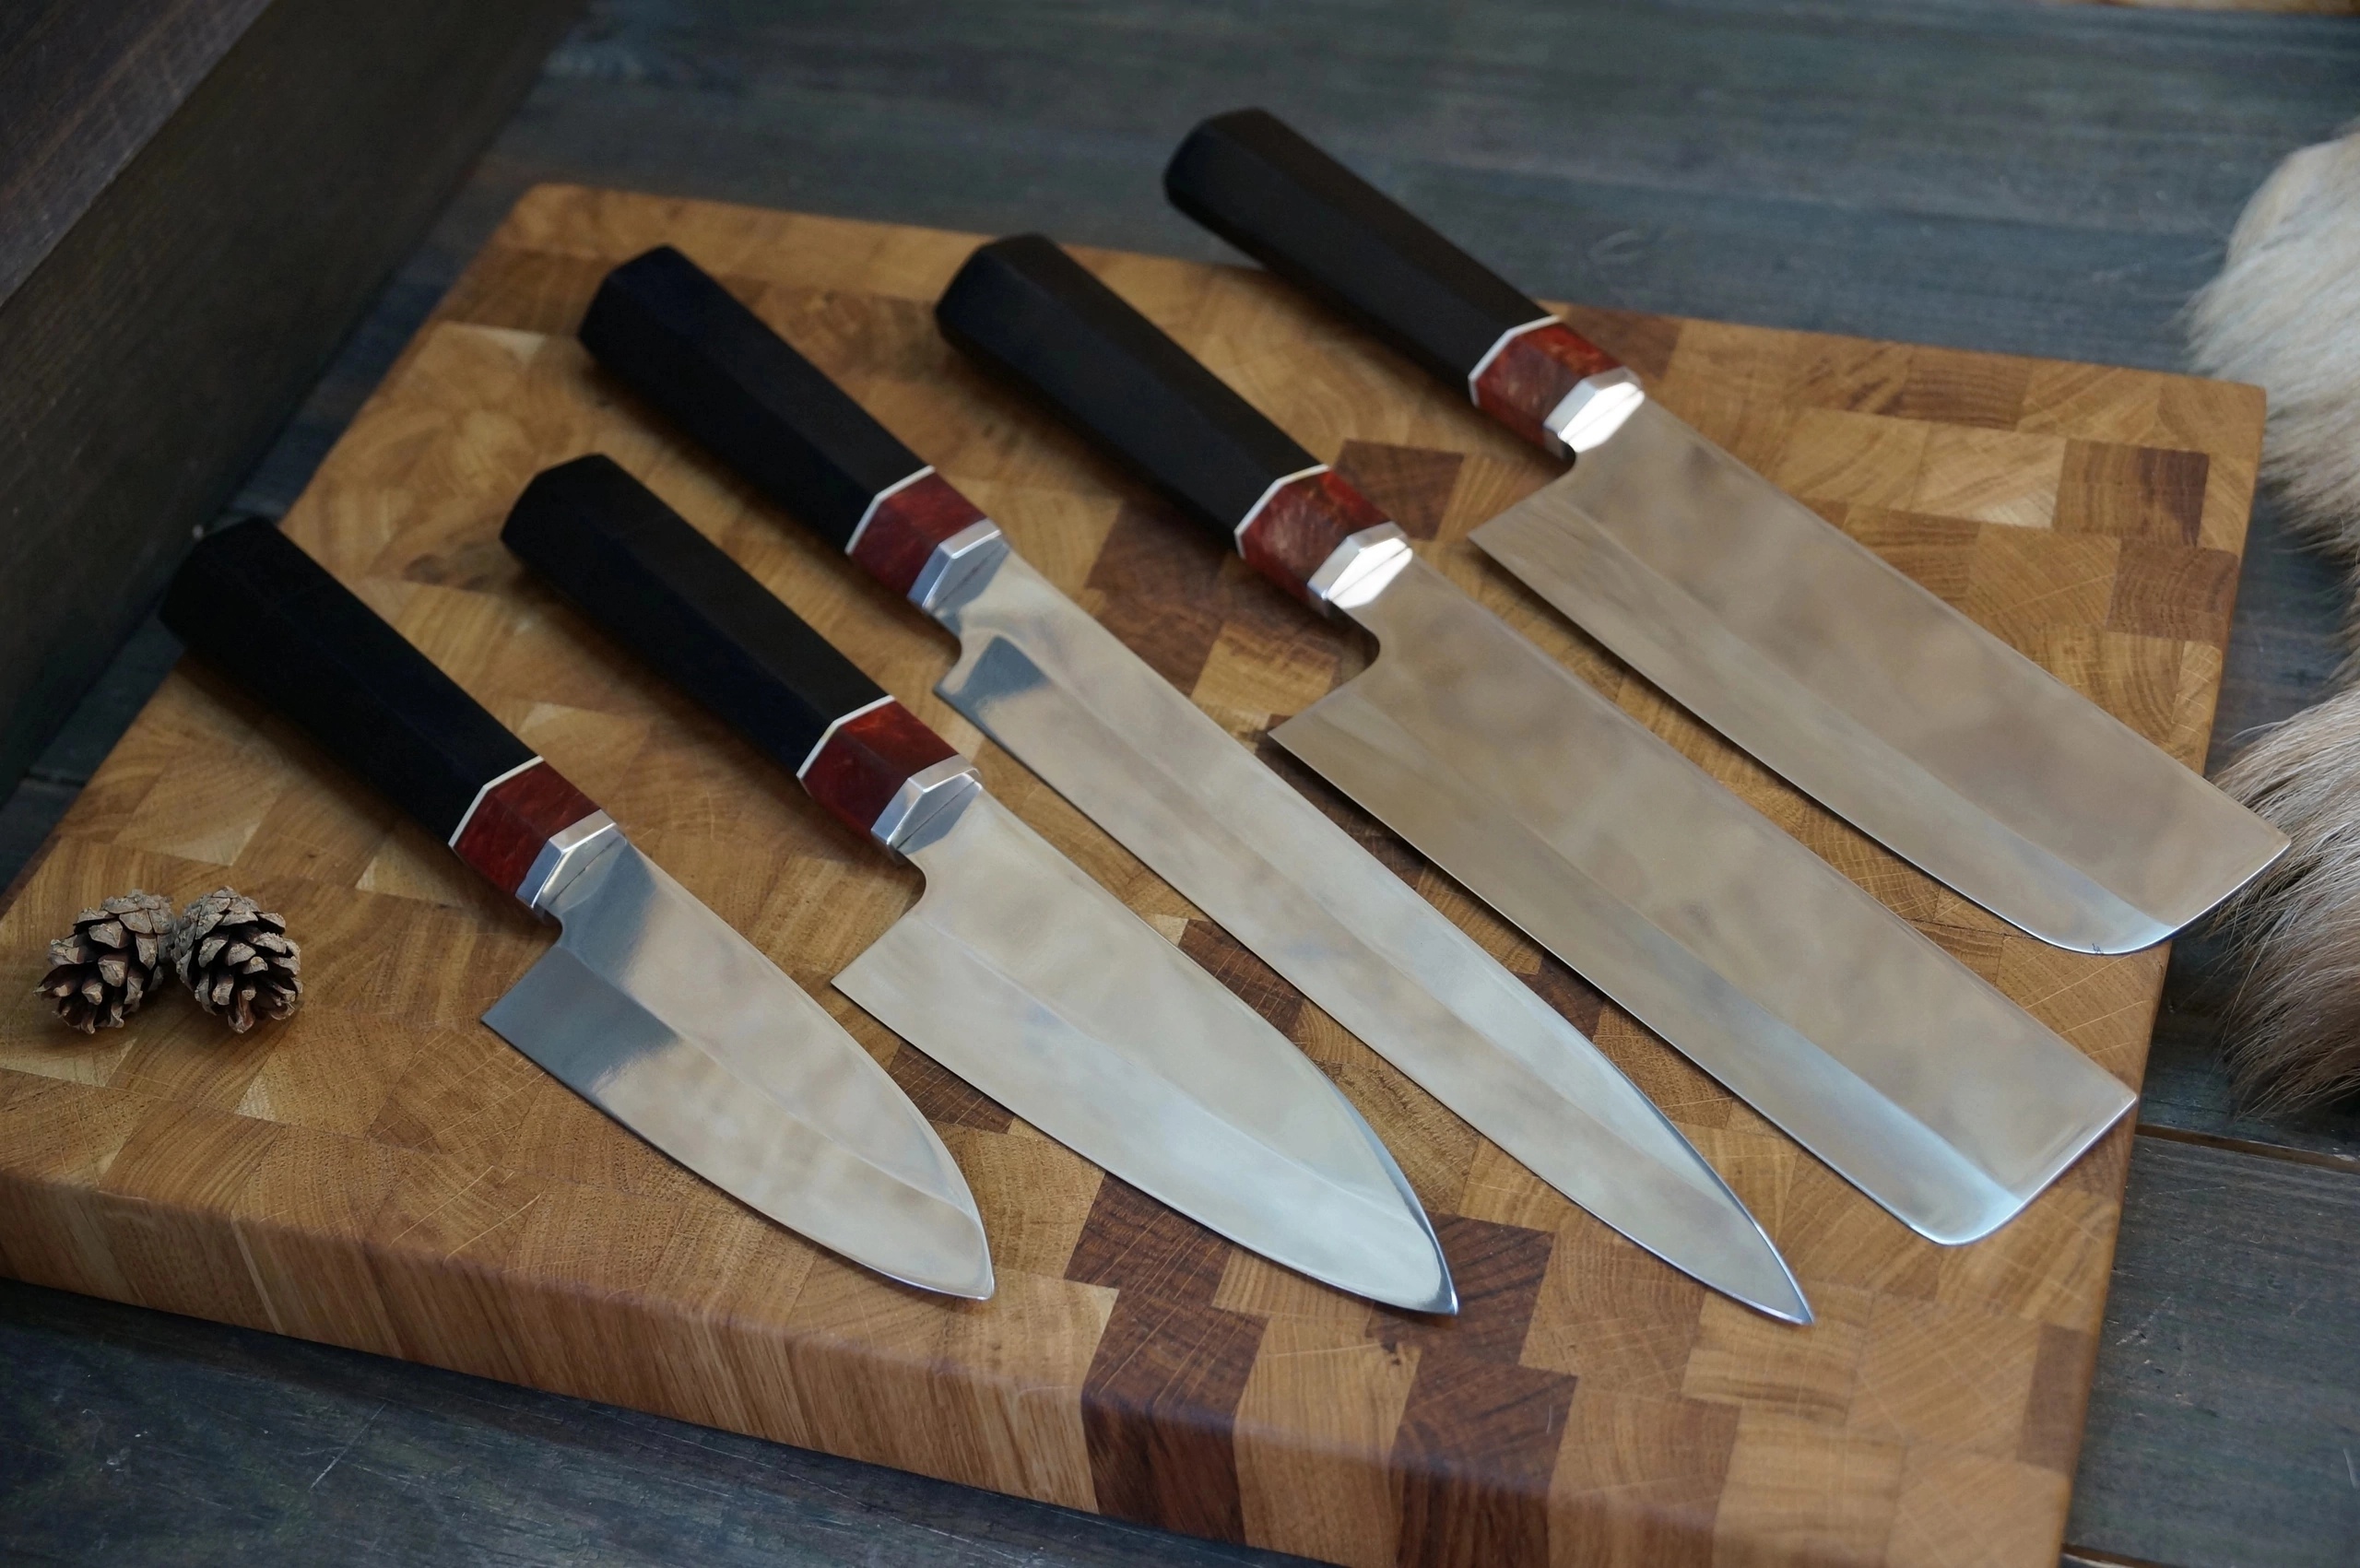 В наборе:
2 шинковочных ножа
2 ножа для овощей
1 длинный мясной нож